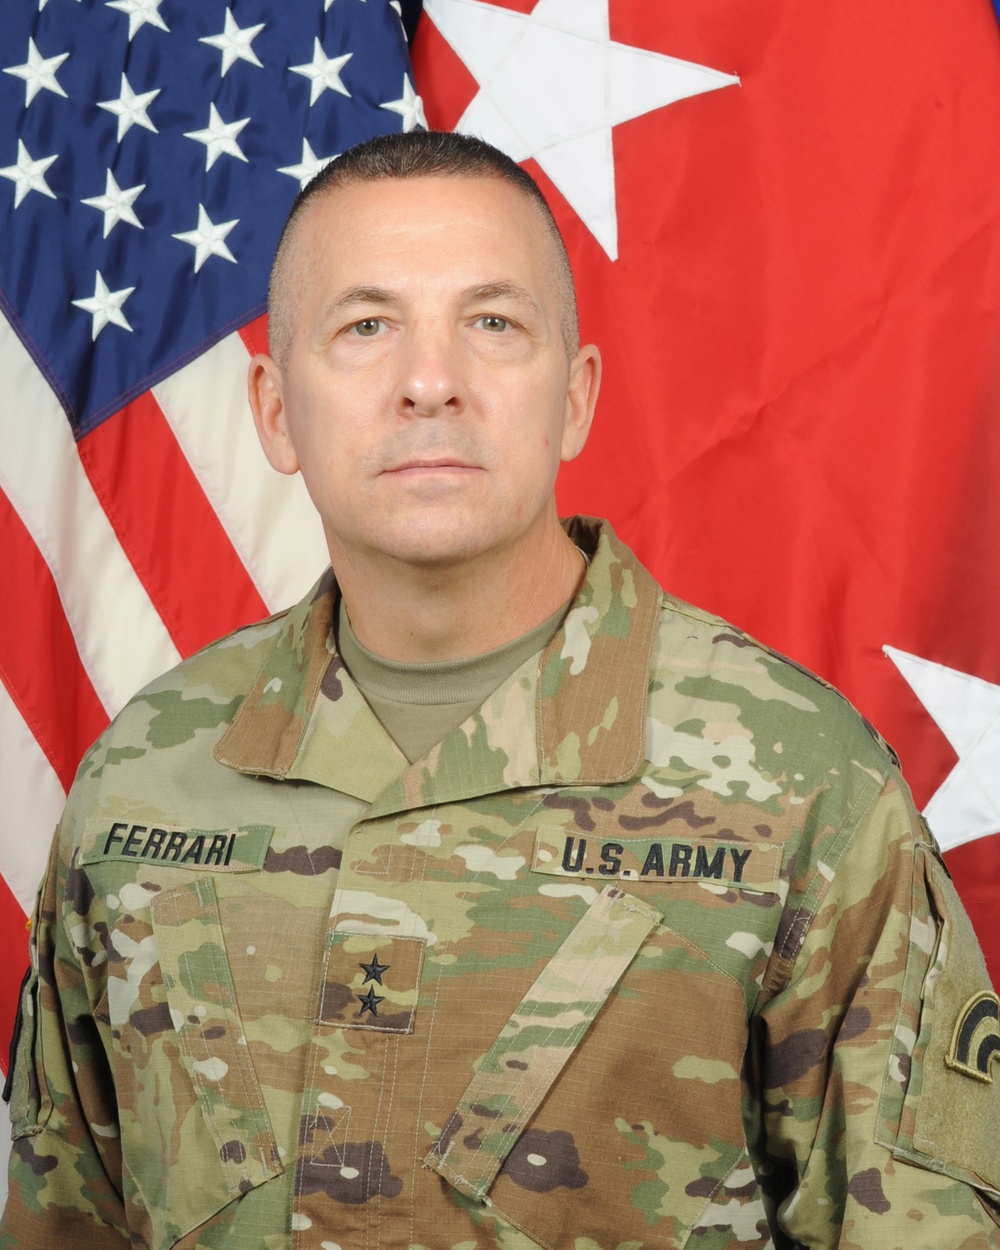 Major General Steven Ferrari